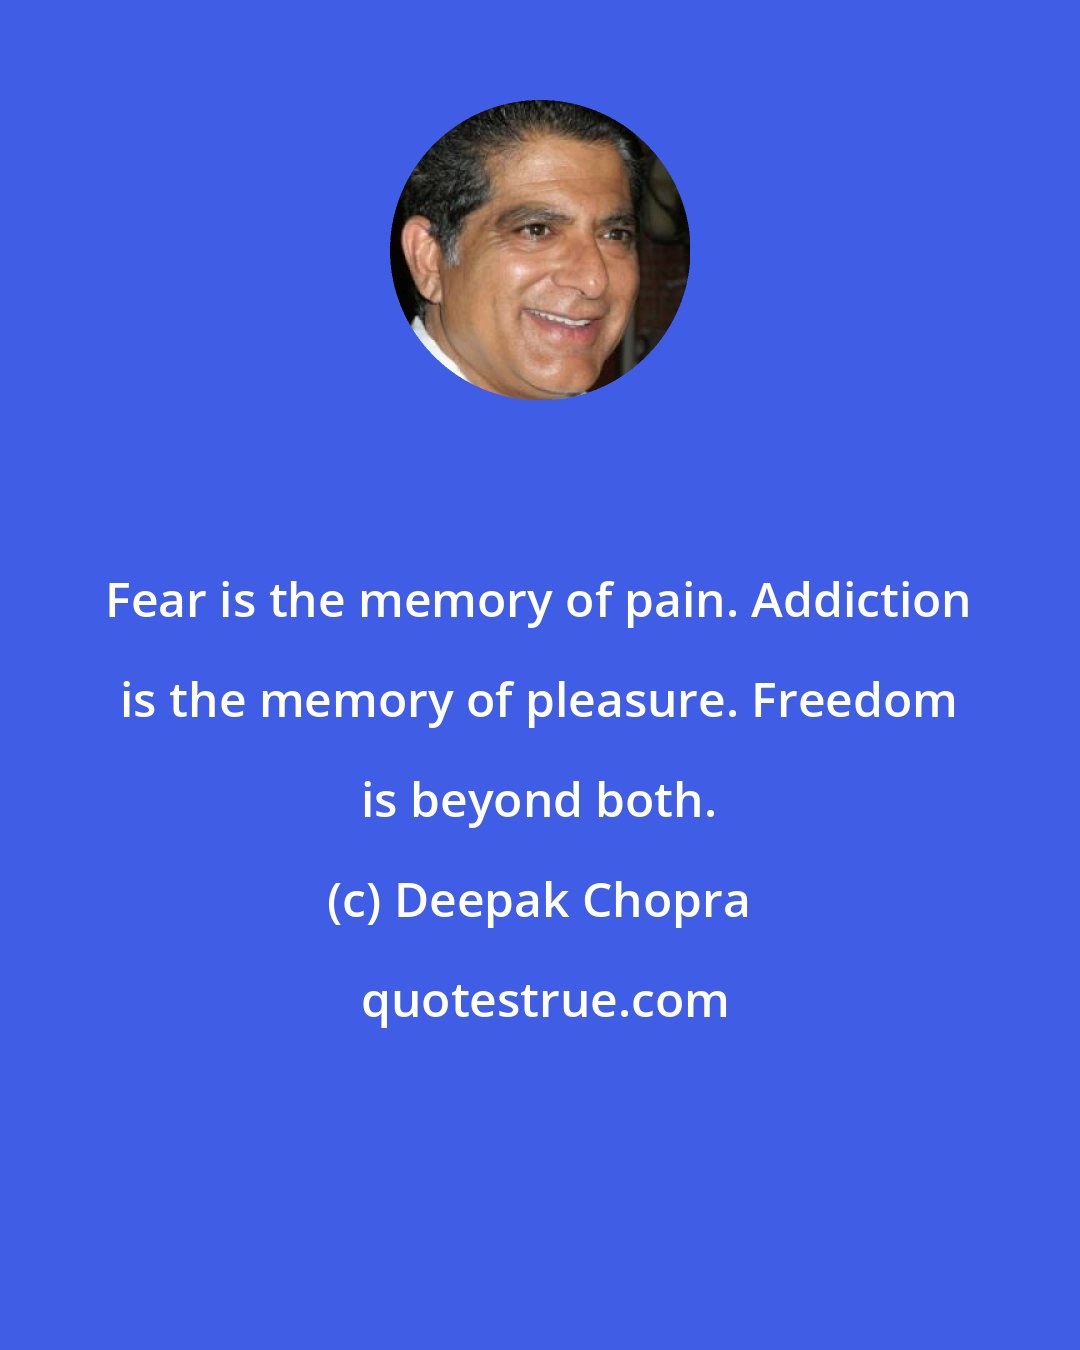 Deepak Chopra: Fear is the memory of pain. Addiction is the memory of pleasure. Freedom is beyond both.